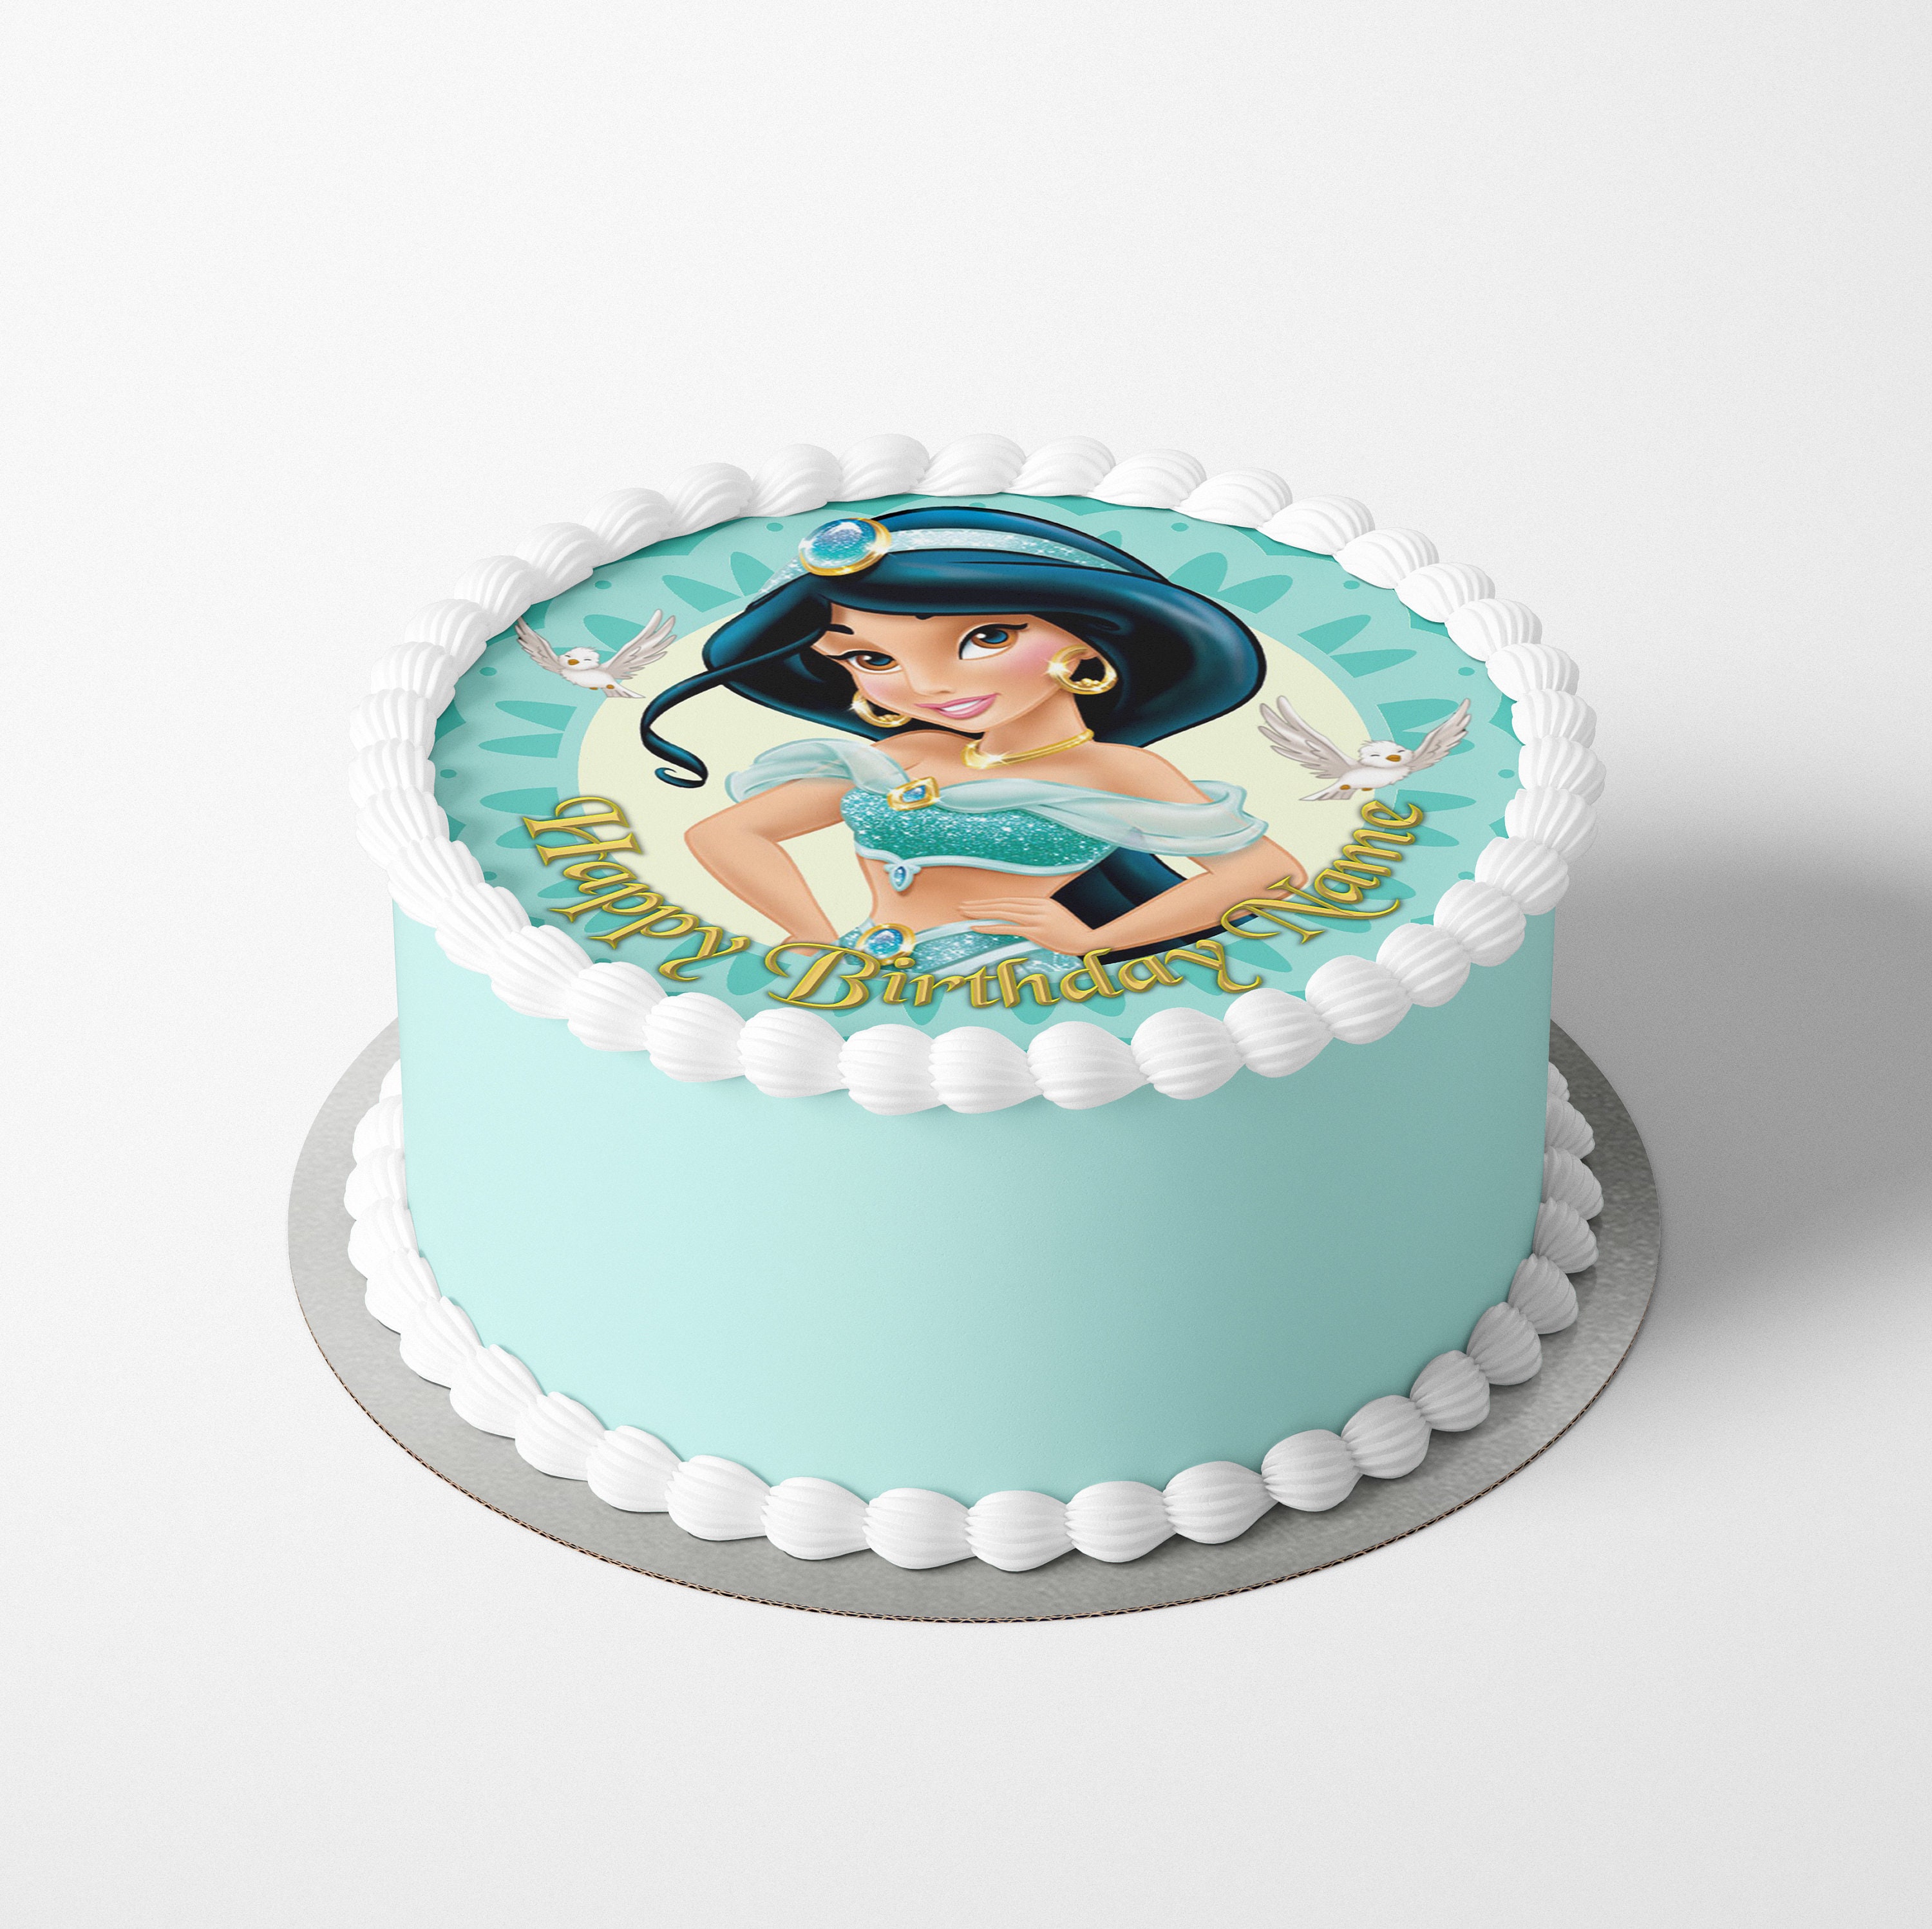 Disney-adorno para tarta de cumpleaños de princesa Aurora, Jasmine, Elsa,  decoración para tarta de feliz